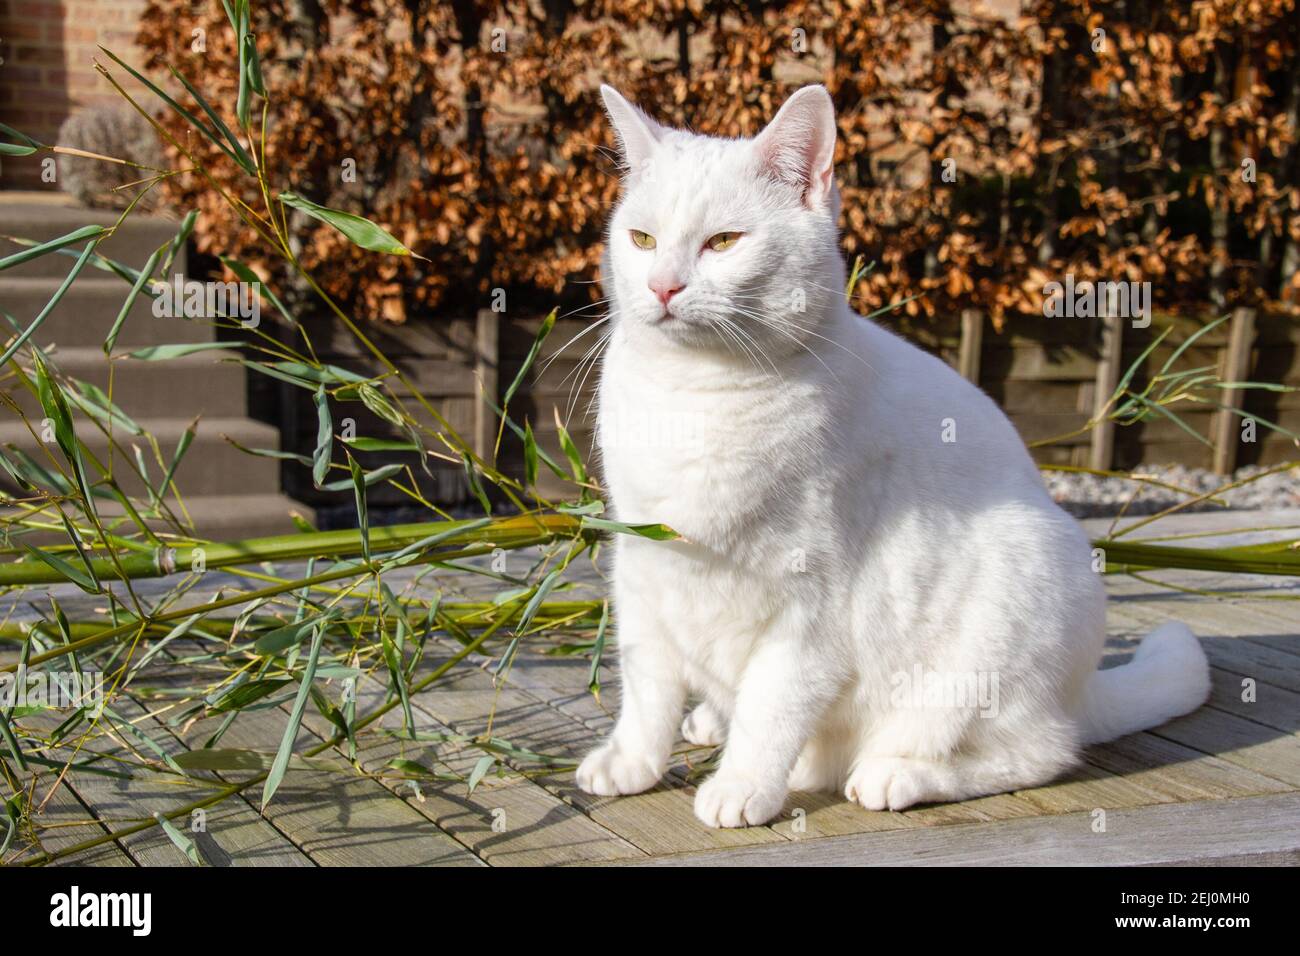 Le chat blanc domestique aux yeux jaunes, un mammifère carnivore de la famille des Felidae, est l'un des animaux de compagnie principaux Banque D'Images